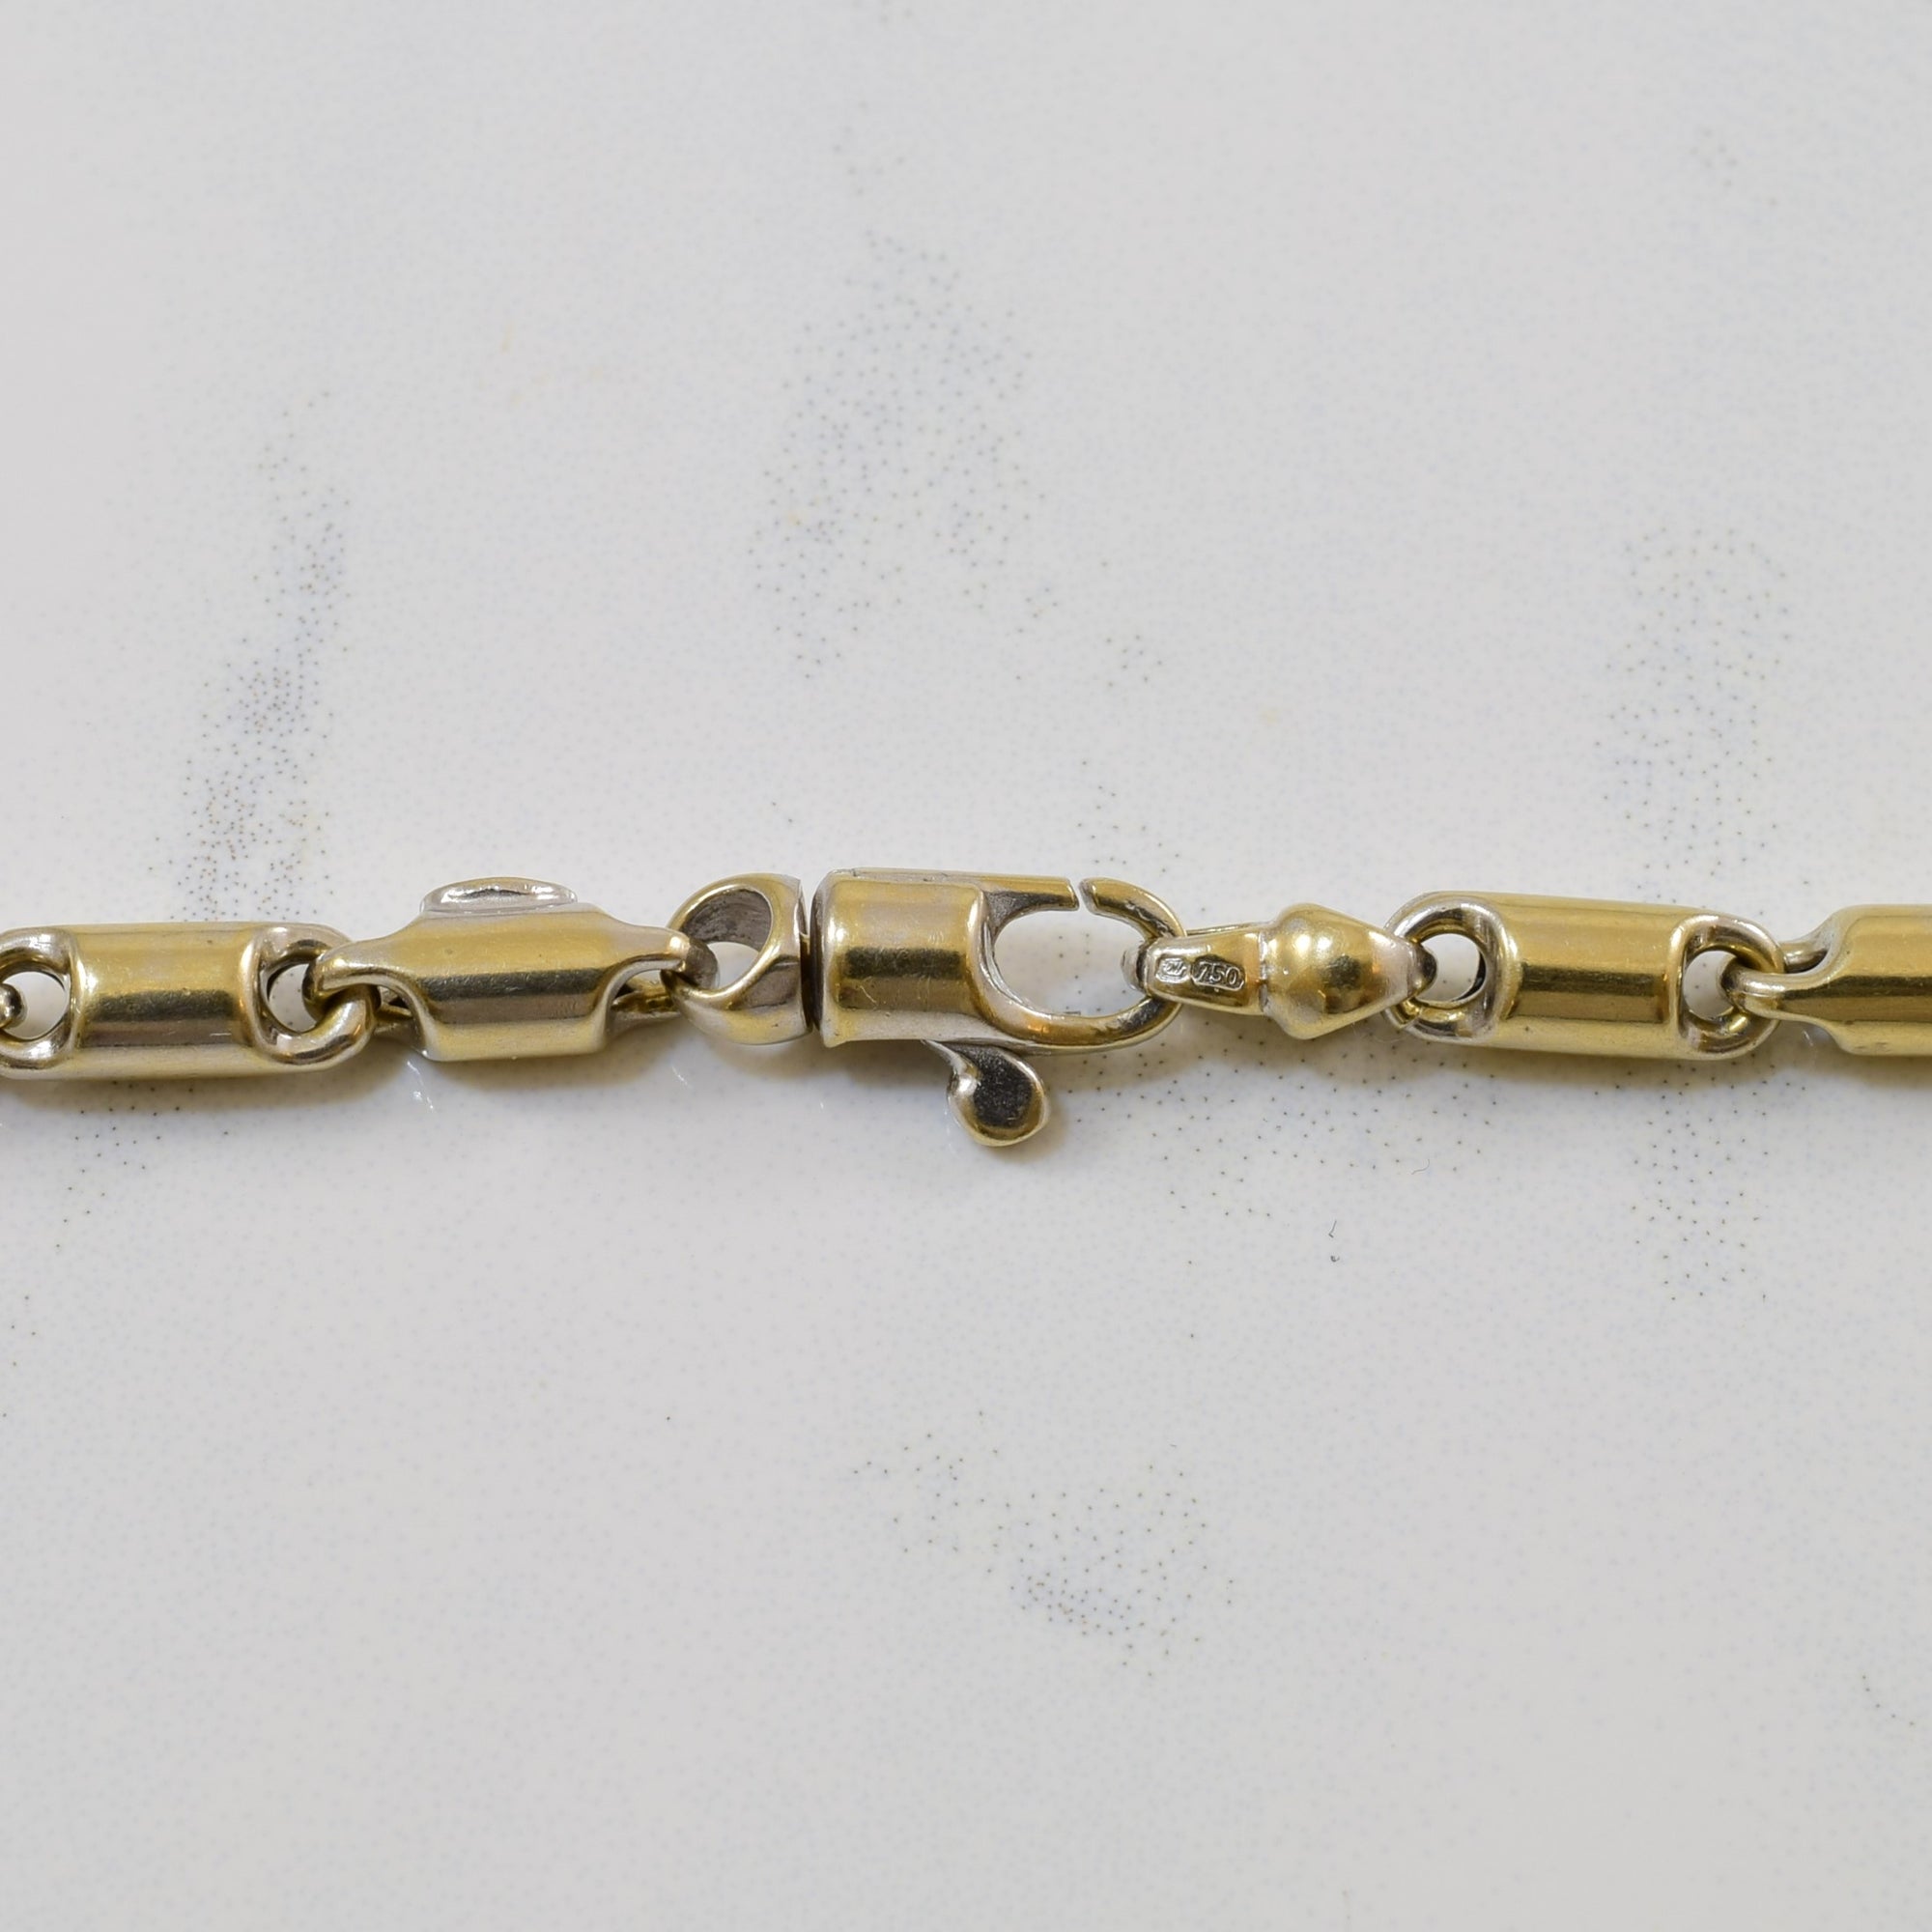 'Baraka' Rubber & Gold Necklace | 23